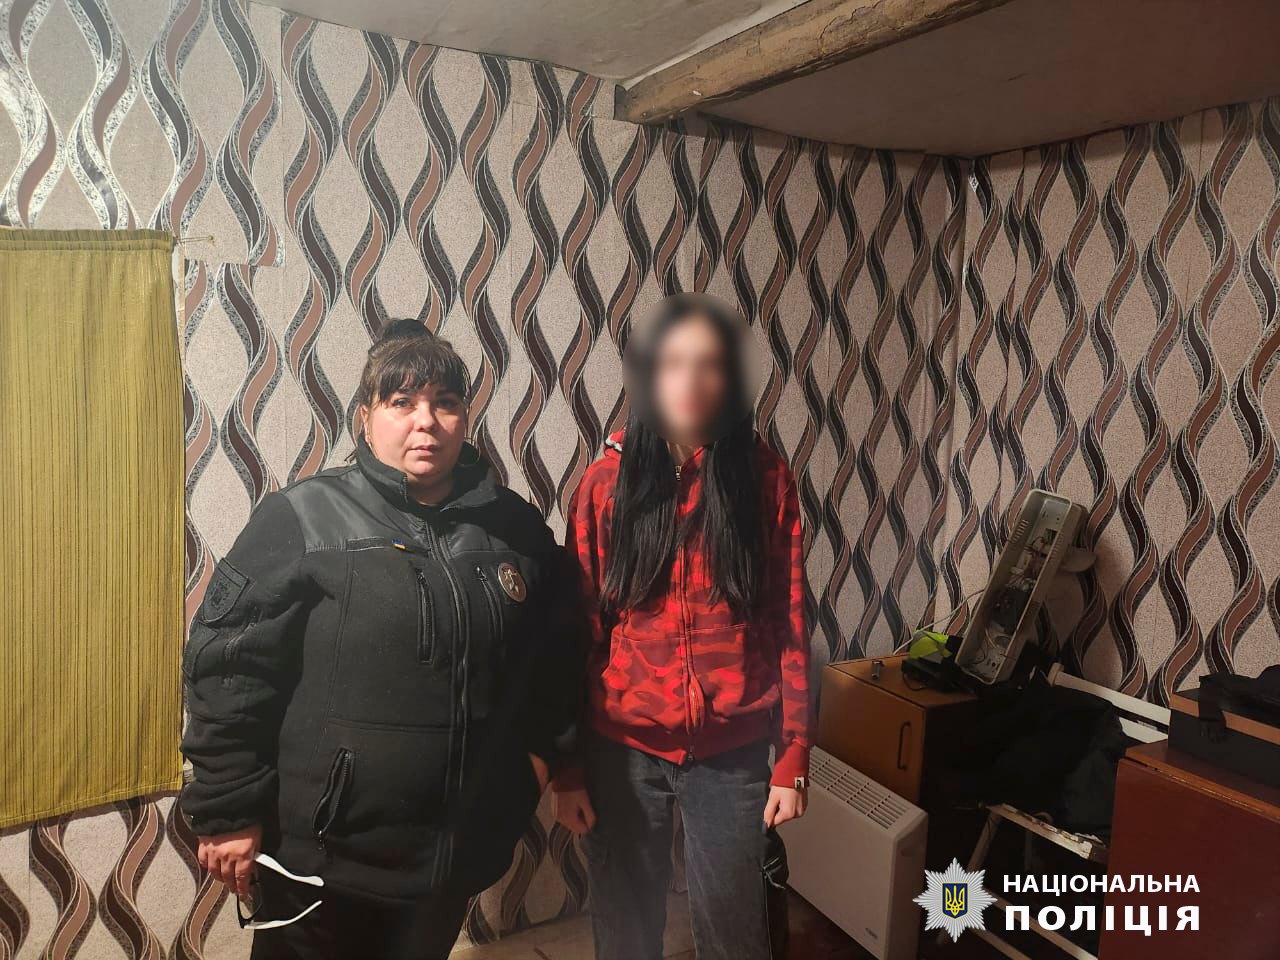 Пішла проводжати подругу та не повернулася: поліція Харківщини вночі шукала неповнолітню